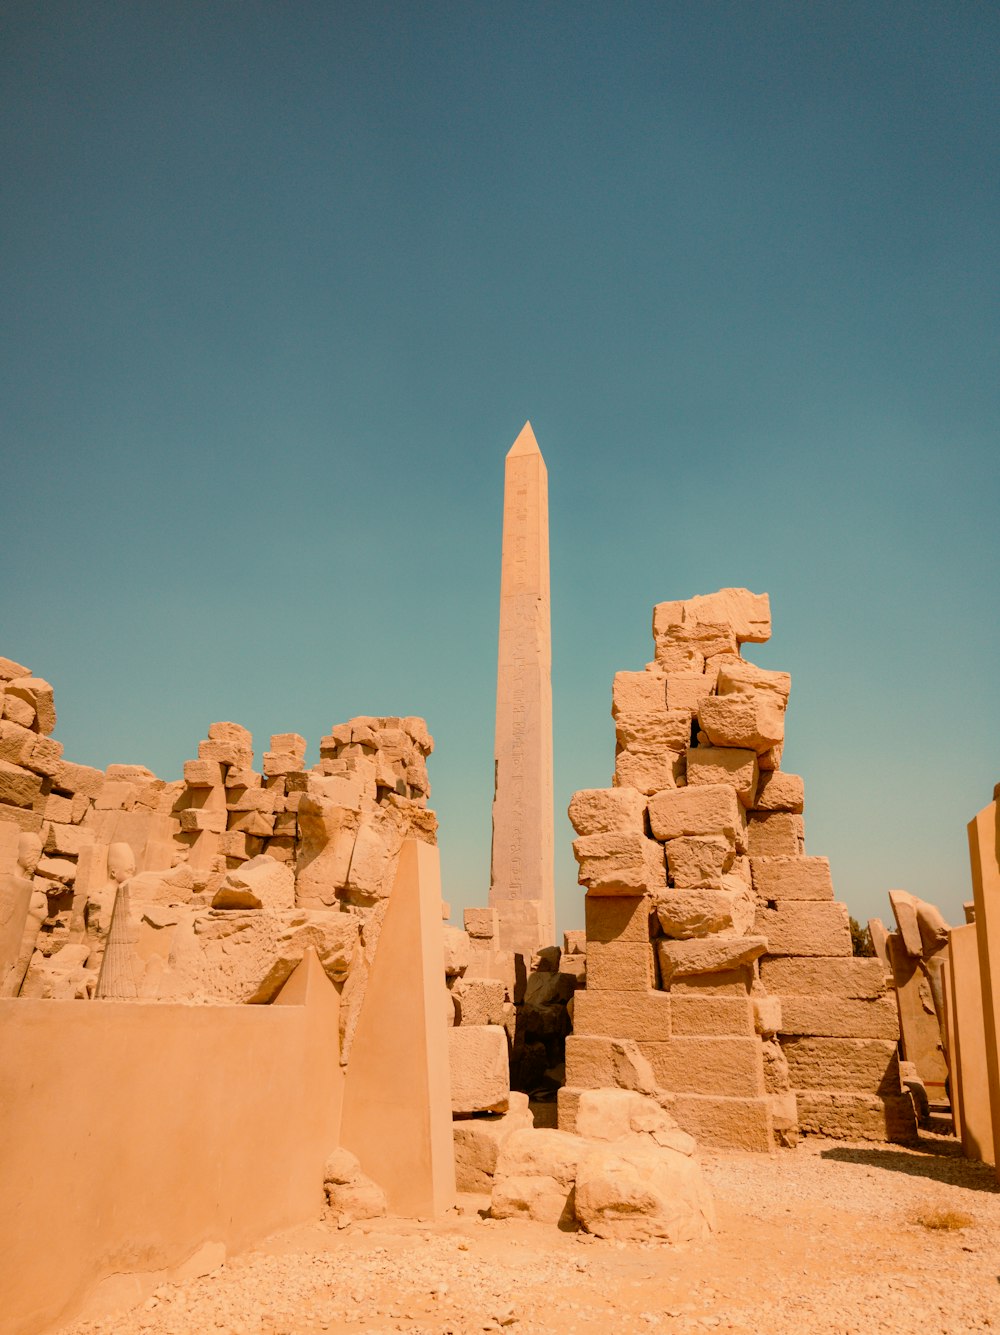 un alto obelisco en medio de un desierto